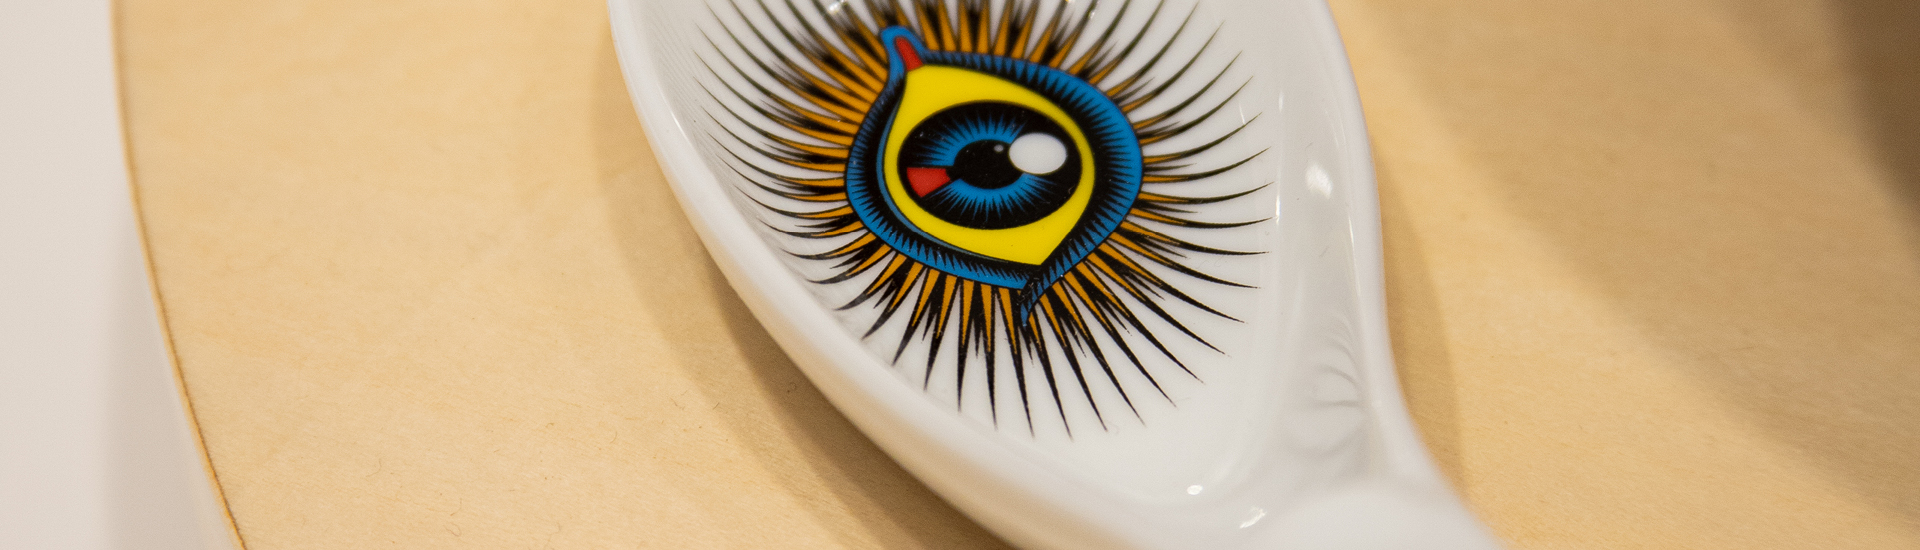 detalhe de colher de cerâmica branca com desenho de um olho colorido, sobre mesa branca